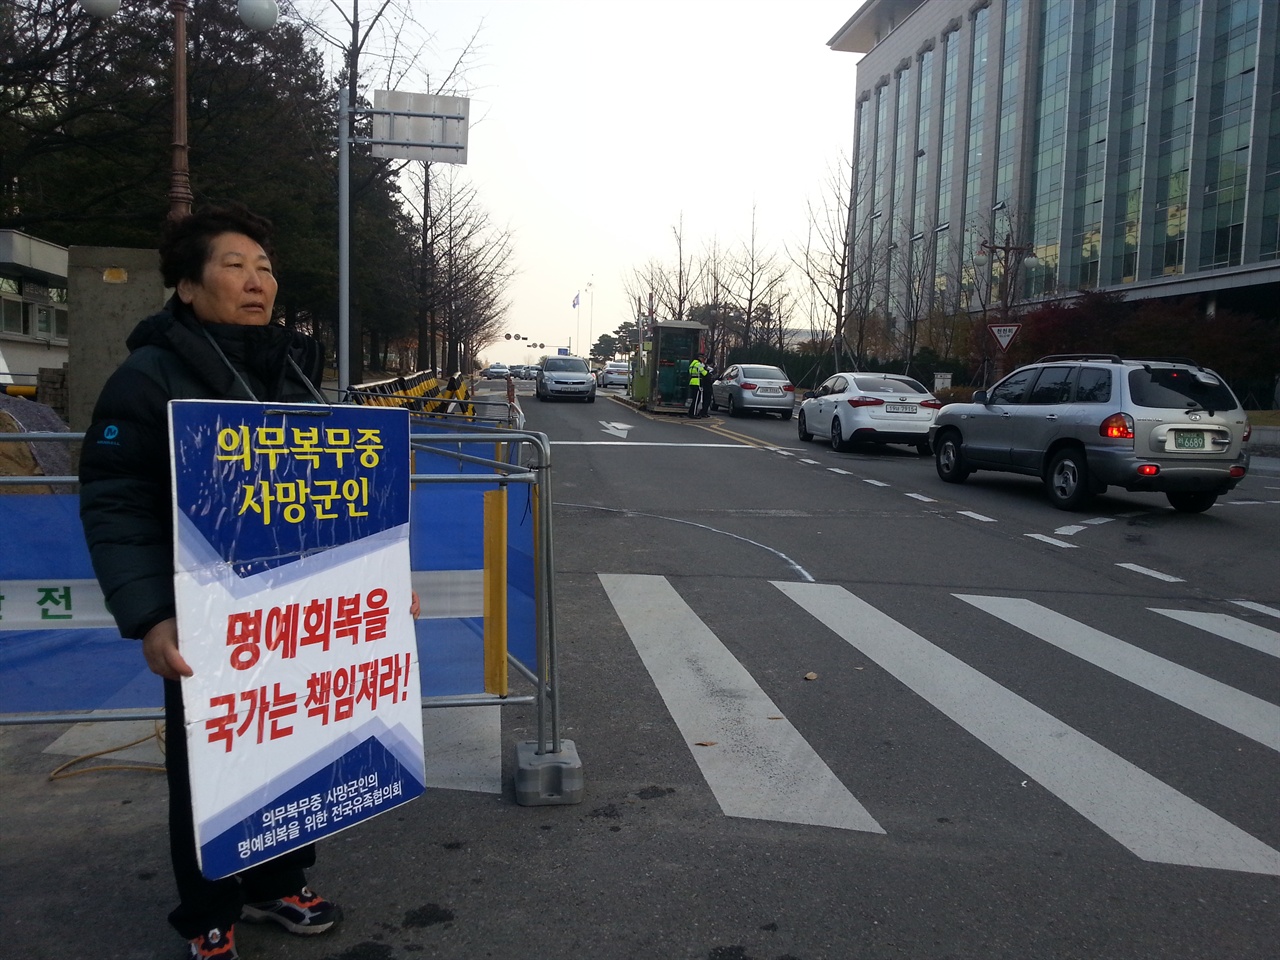 국회 앞에서 1인 시위중인 어머니. 한겨울에 전주에서 서울 여의도까지 늘 함께했던 어머니의 한은 언제 해결될까